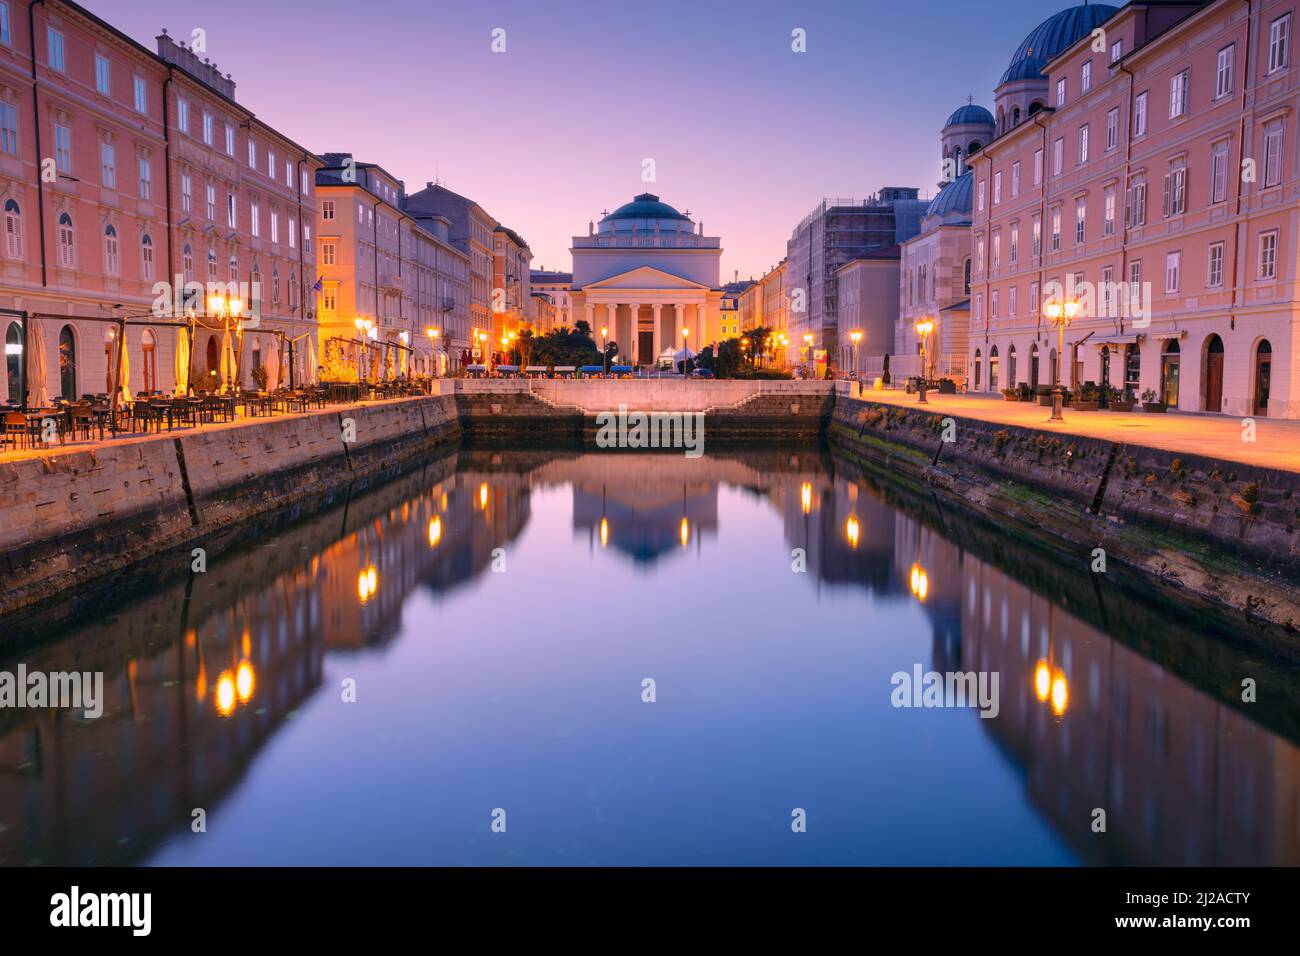 Trieste, Italia. Immagine del paesaggio urbano del centro di Trieste all'alba. Foto Stock